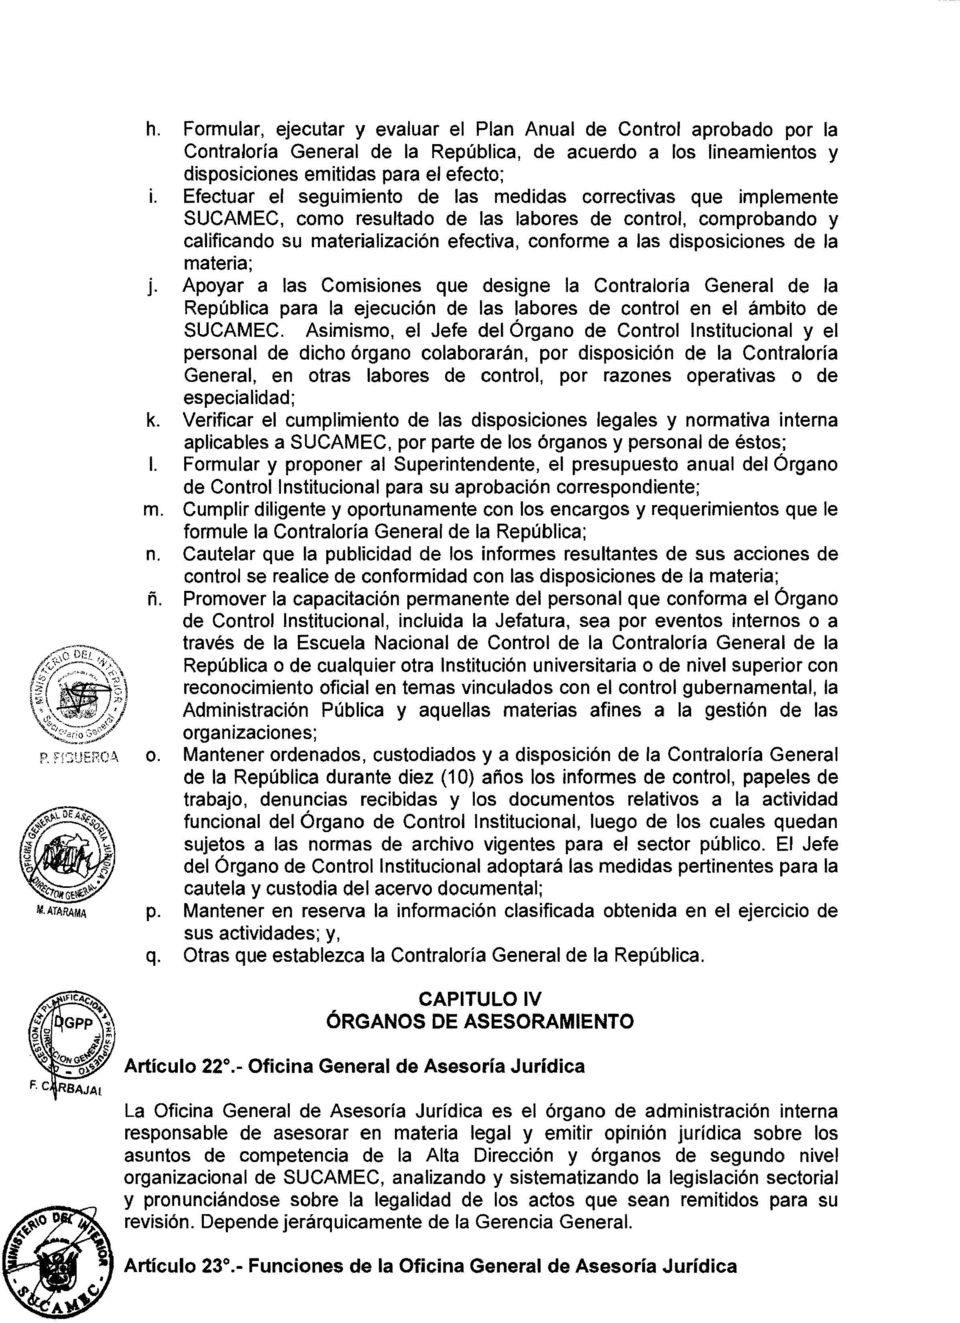 disposiciones de la materia; j. Apoyar a las Comisiones que designe la Contraloría General de la República para la ejecución de las labores de control en el ámbito de SUCAMEC.